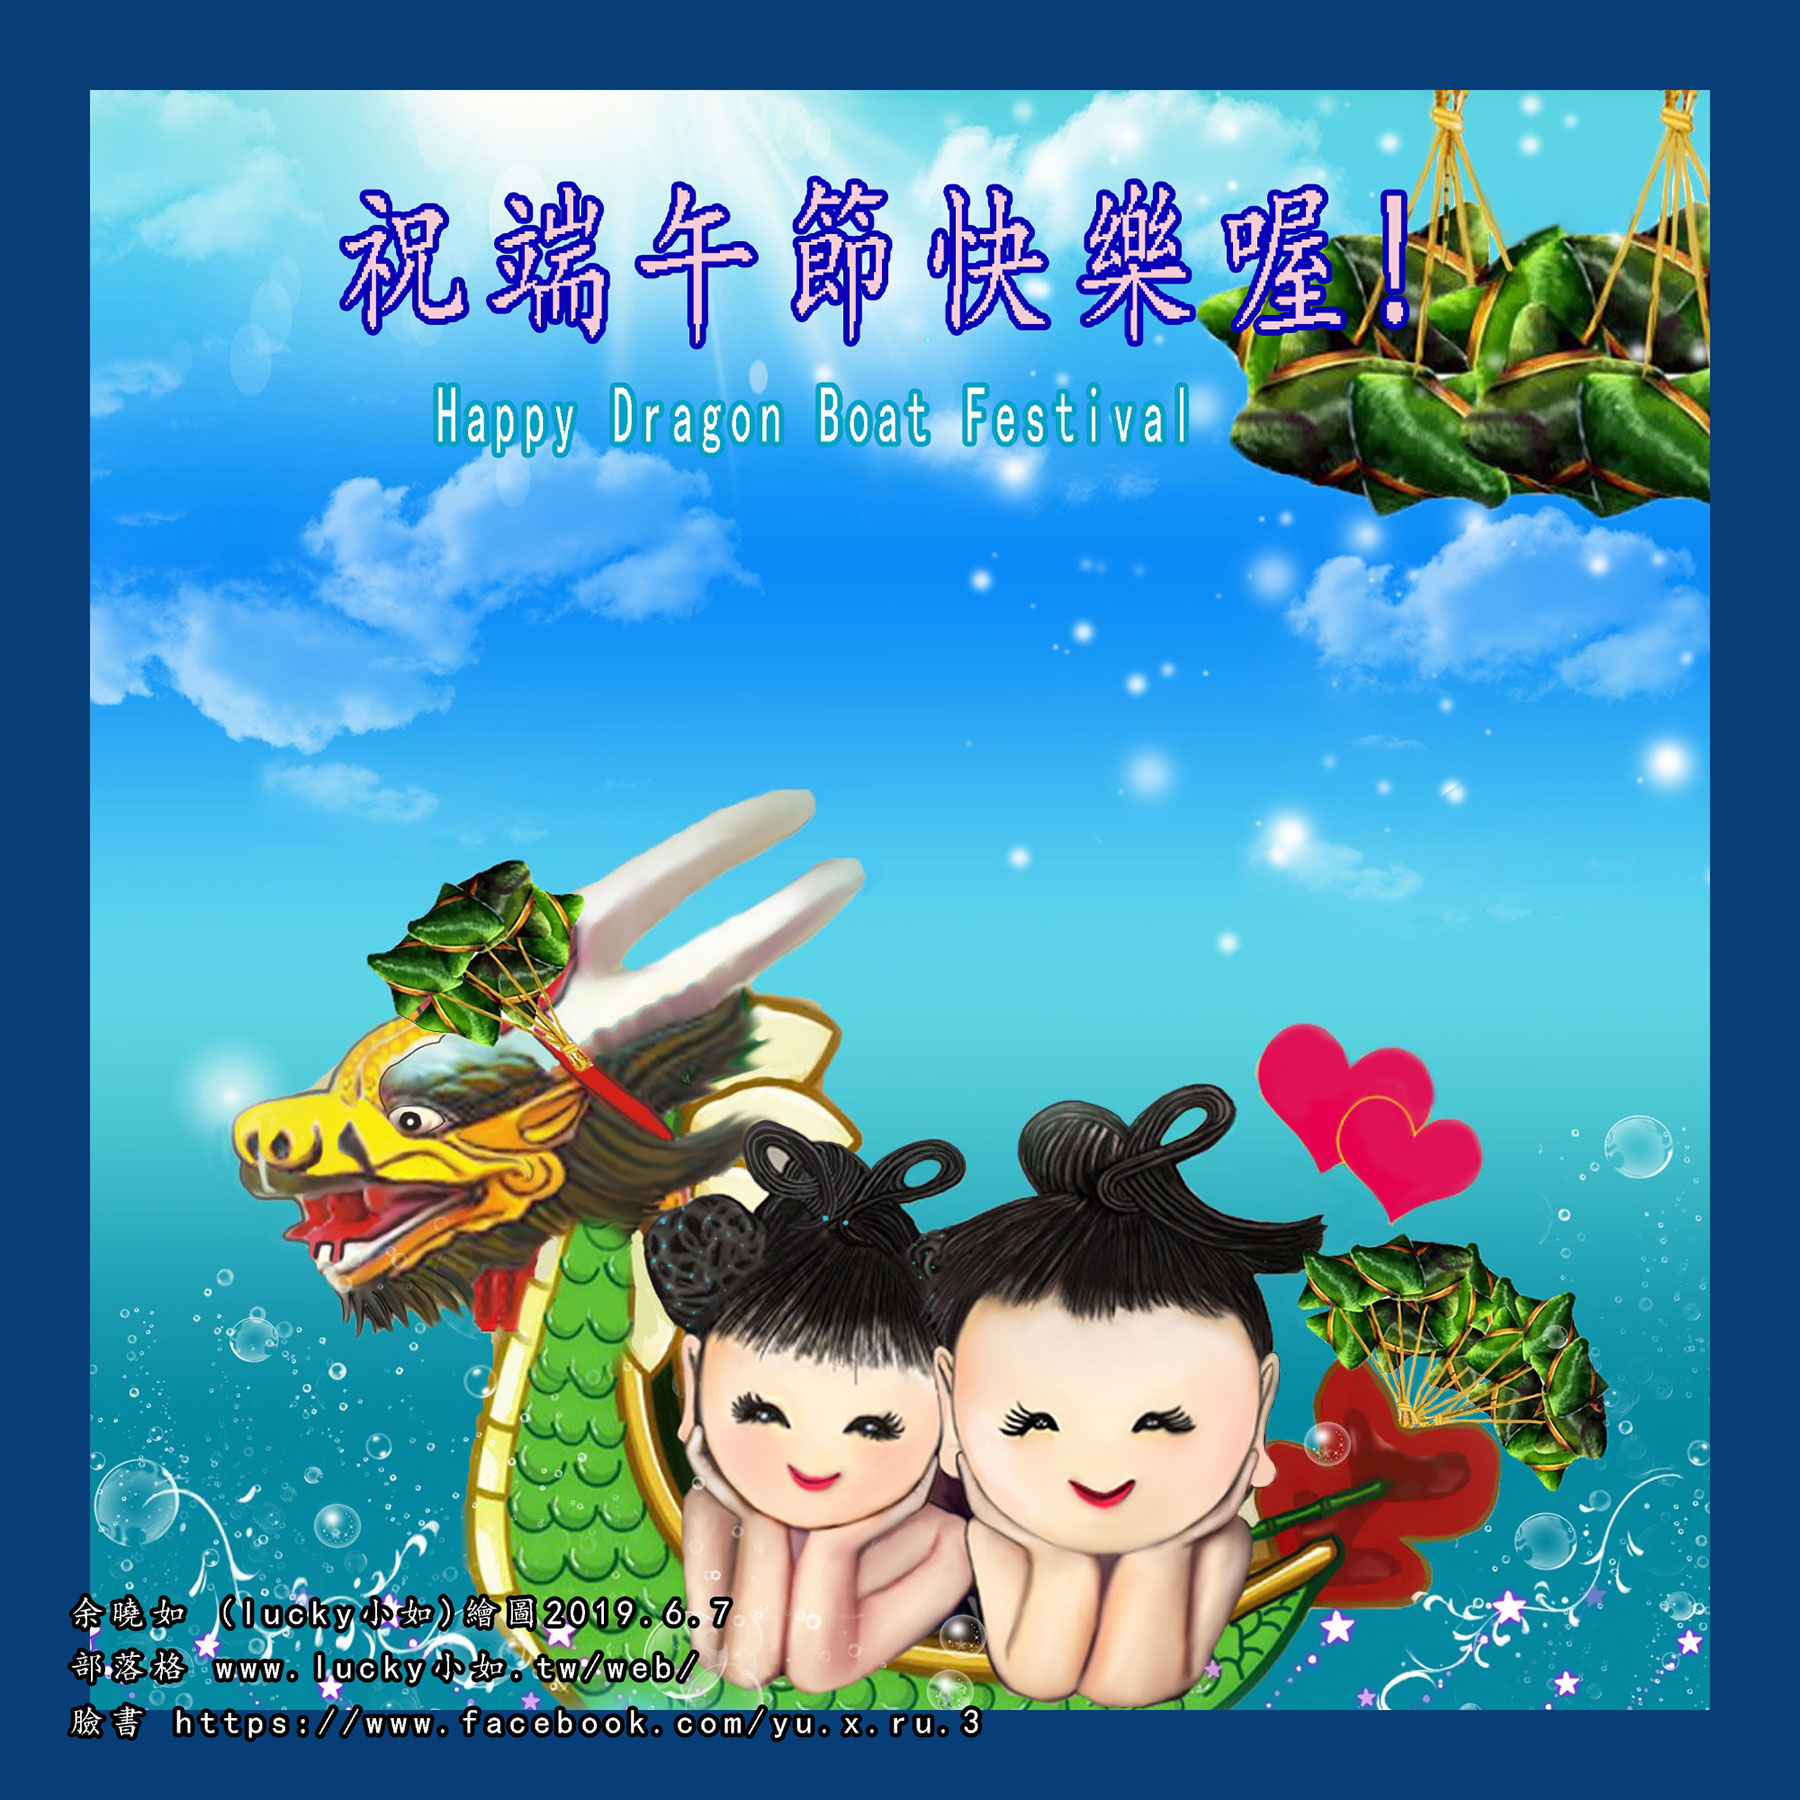 恭祝大家 端午節快樂喔 ! Happy Dragon Boat Festival